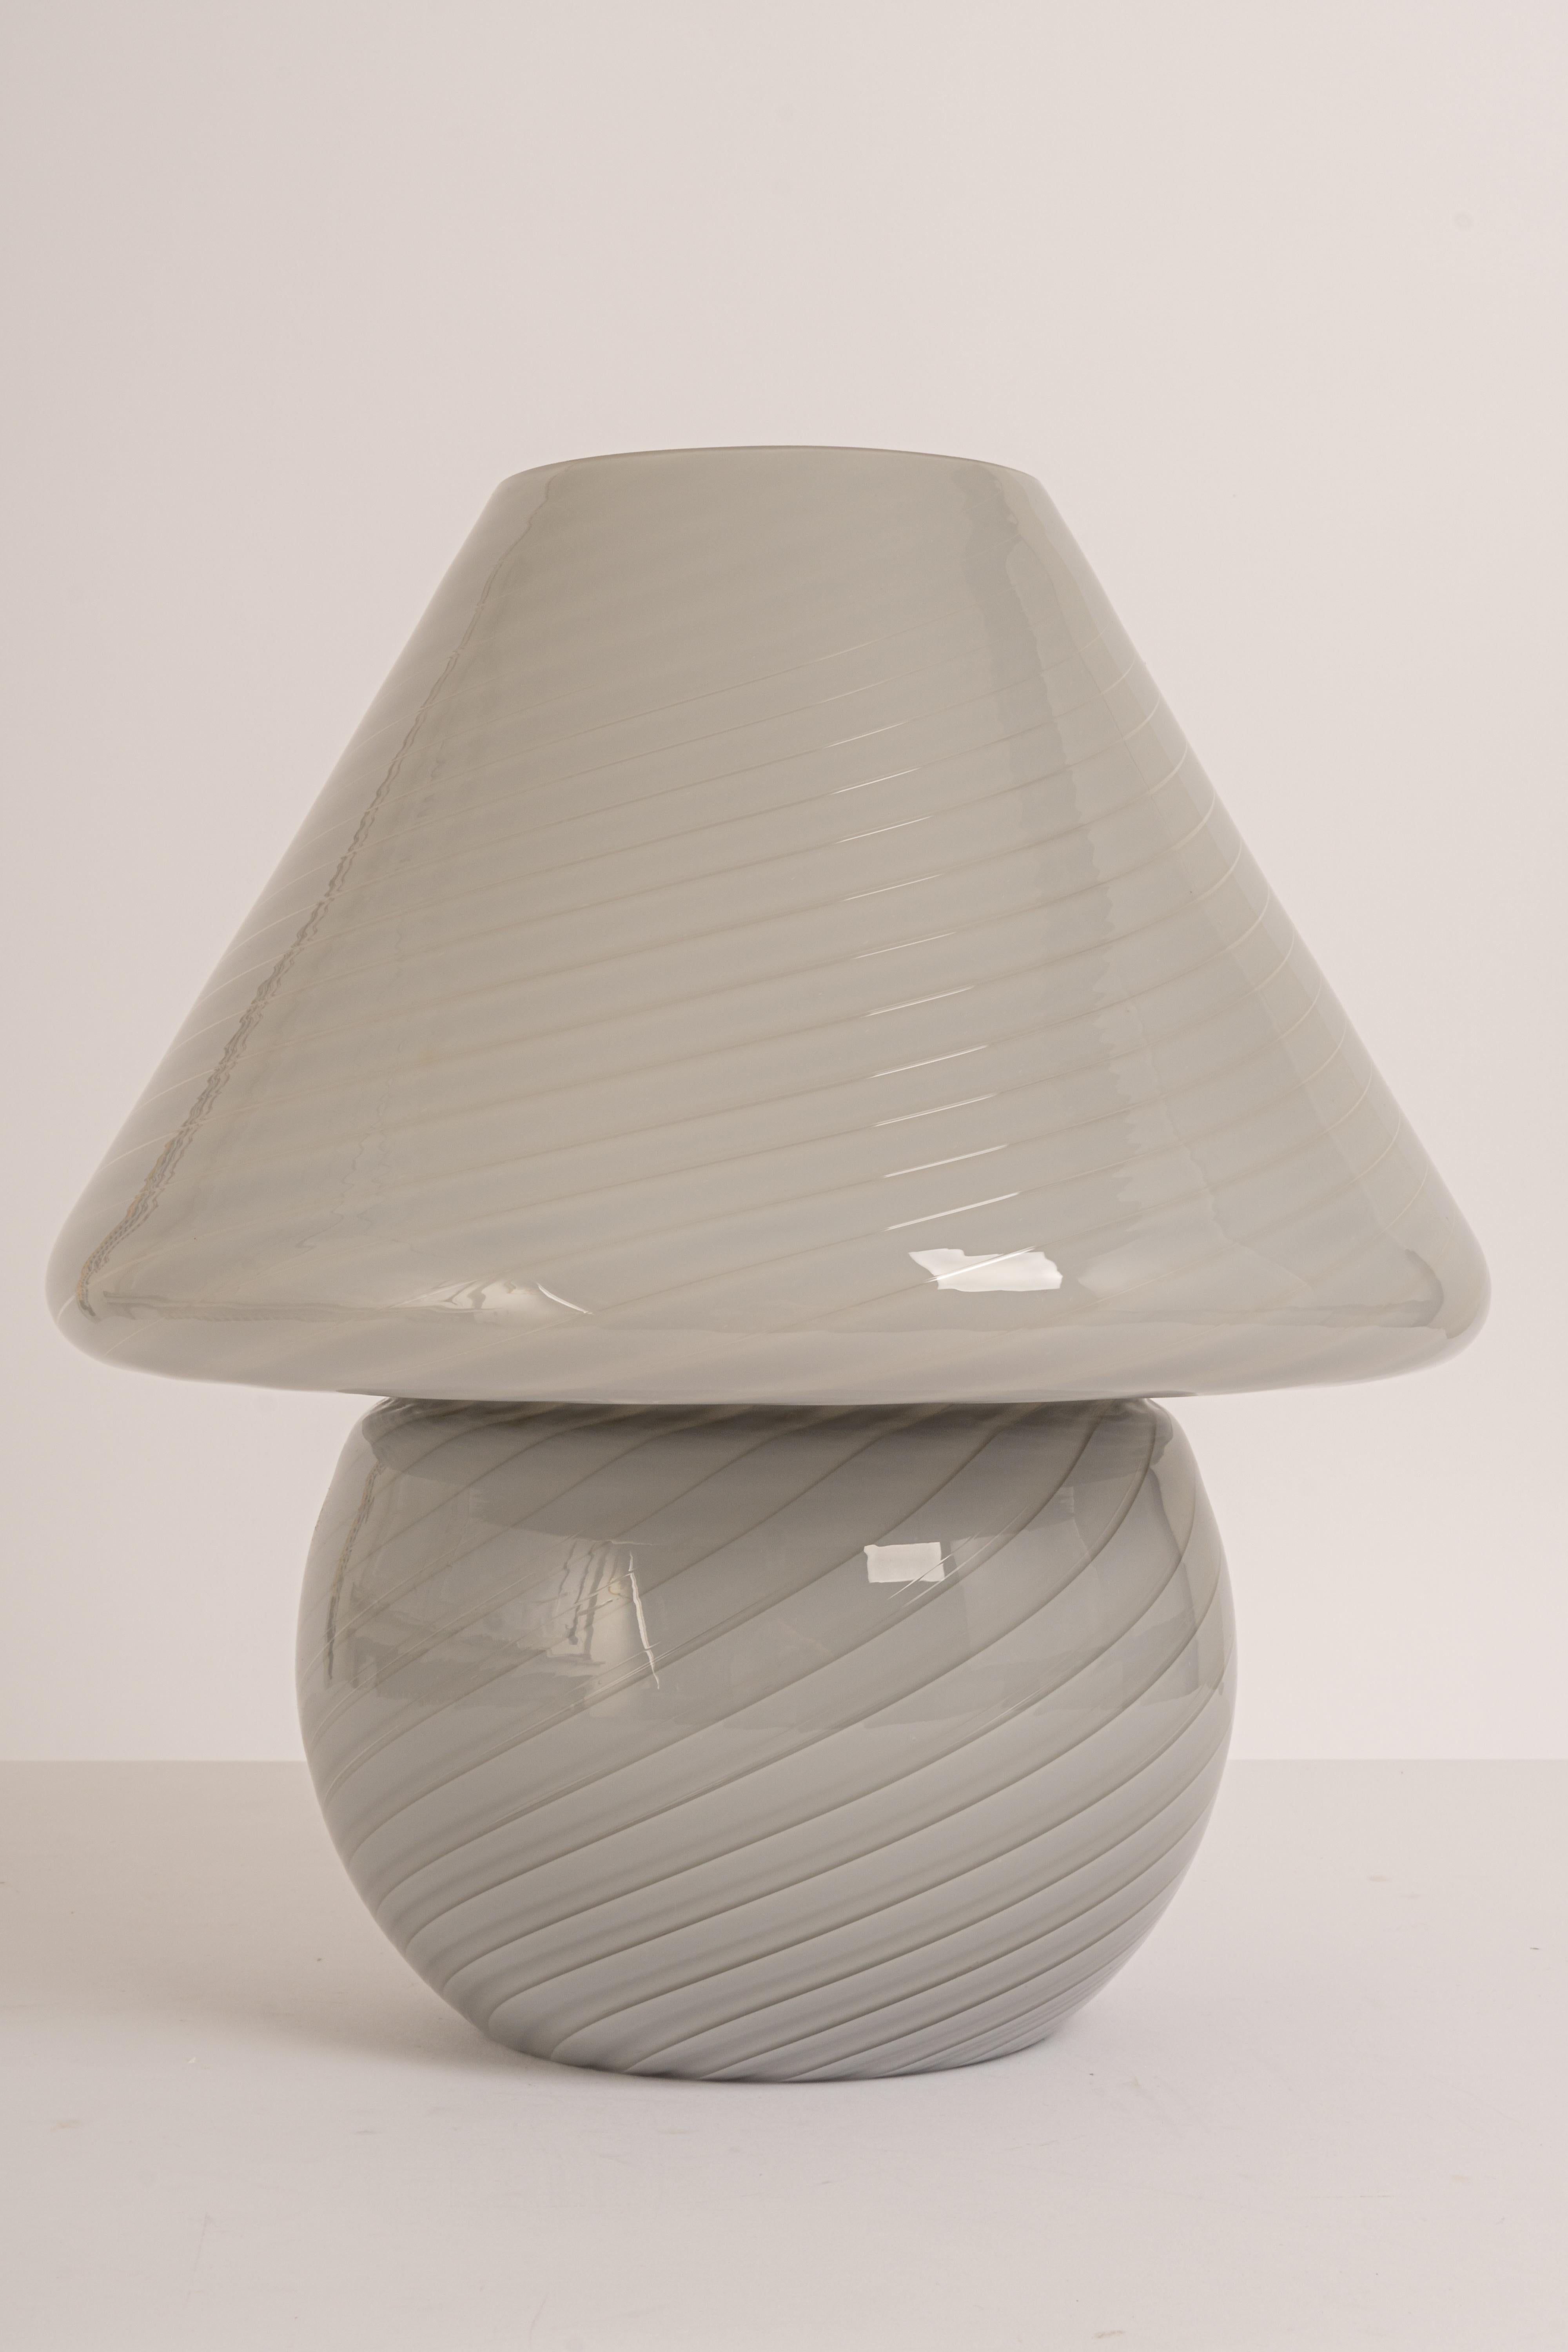 Merveilleuse lampe de table champignon de Peill & Putzler, Allemagne, années 1970. Fabriqué en une seule pièce.
Le corps en verre et sa qualité tranchante contrastent joliment avec la surface lisse et la forme du champignon. 

Mesures : Grande